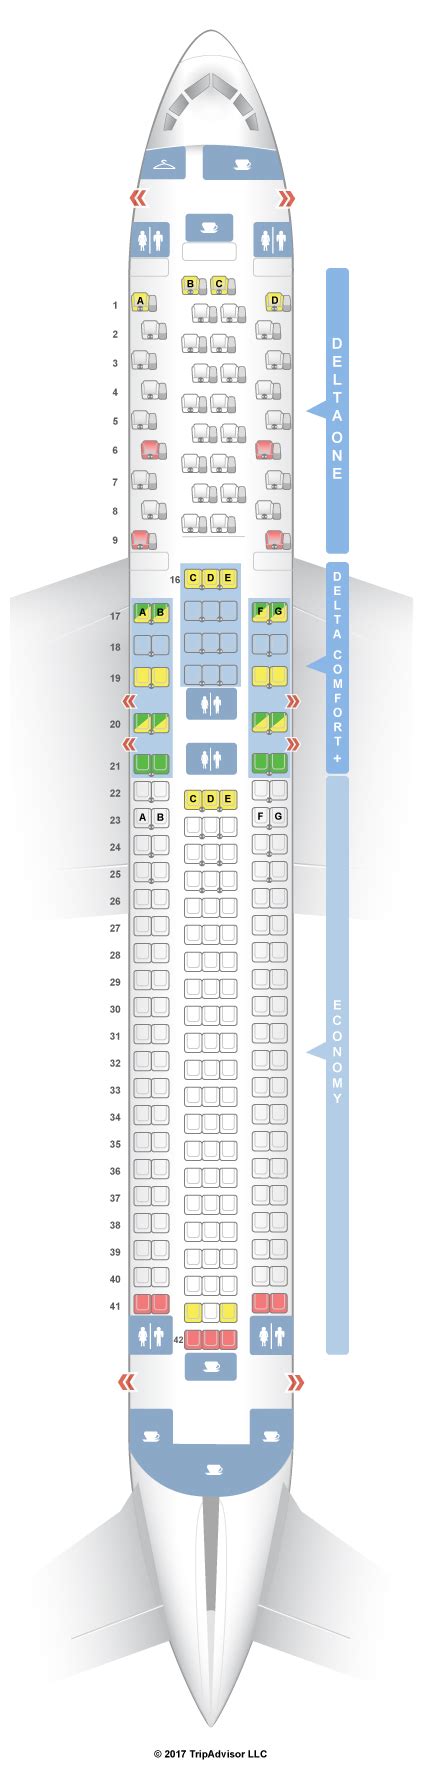 boeing 767-300 seat map delta